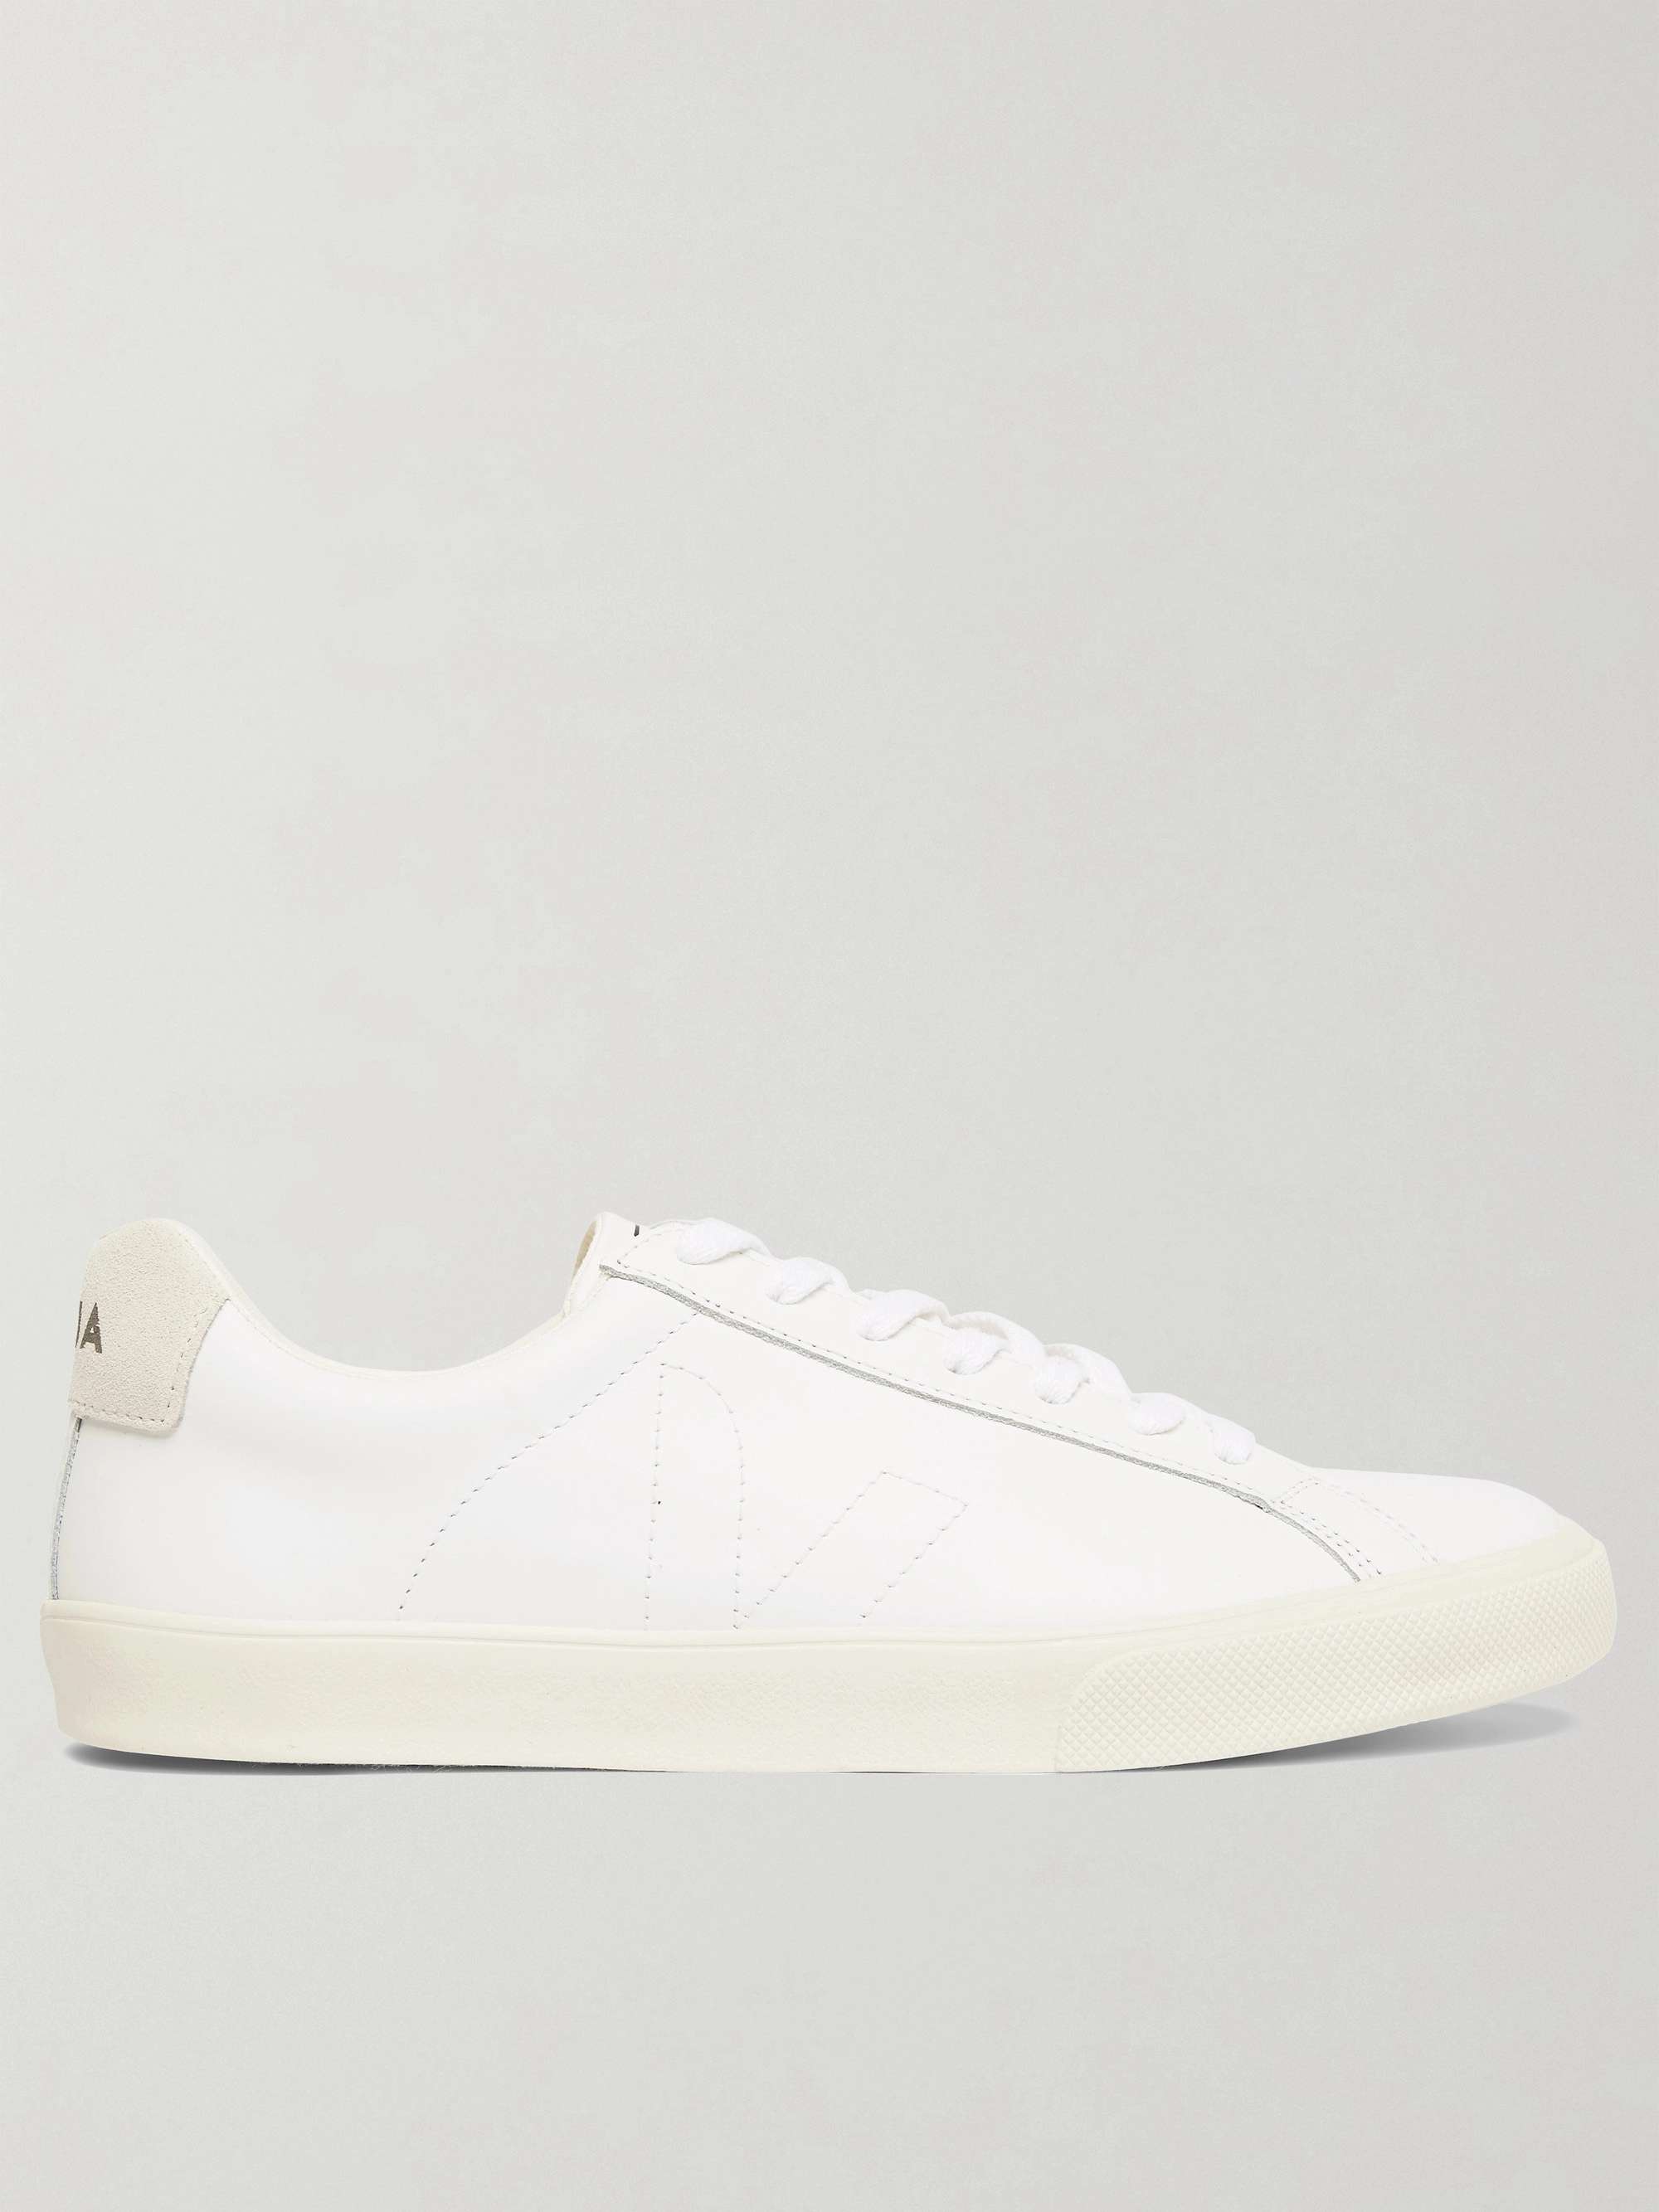 White Esplar Suede-Trimmed Leather Sneakers | VEJA | MR PORTER